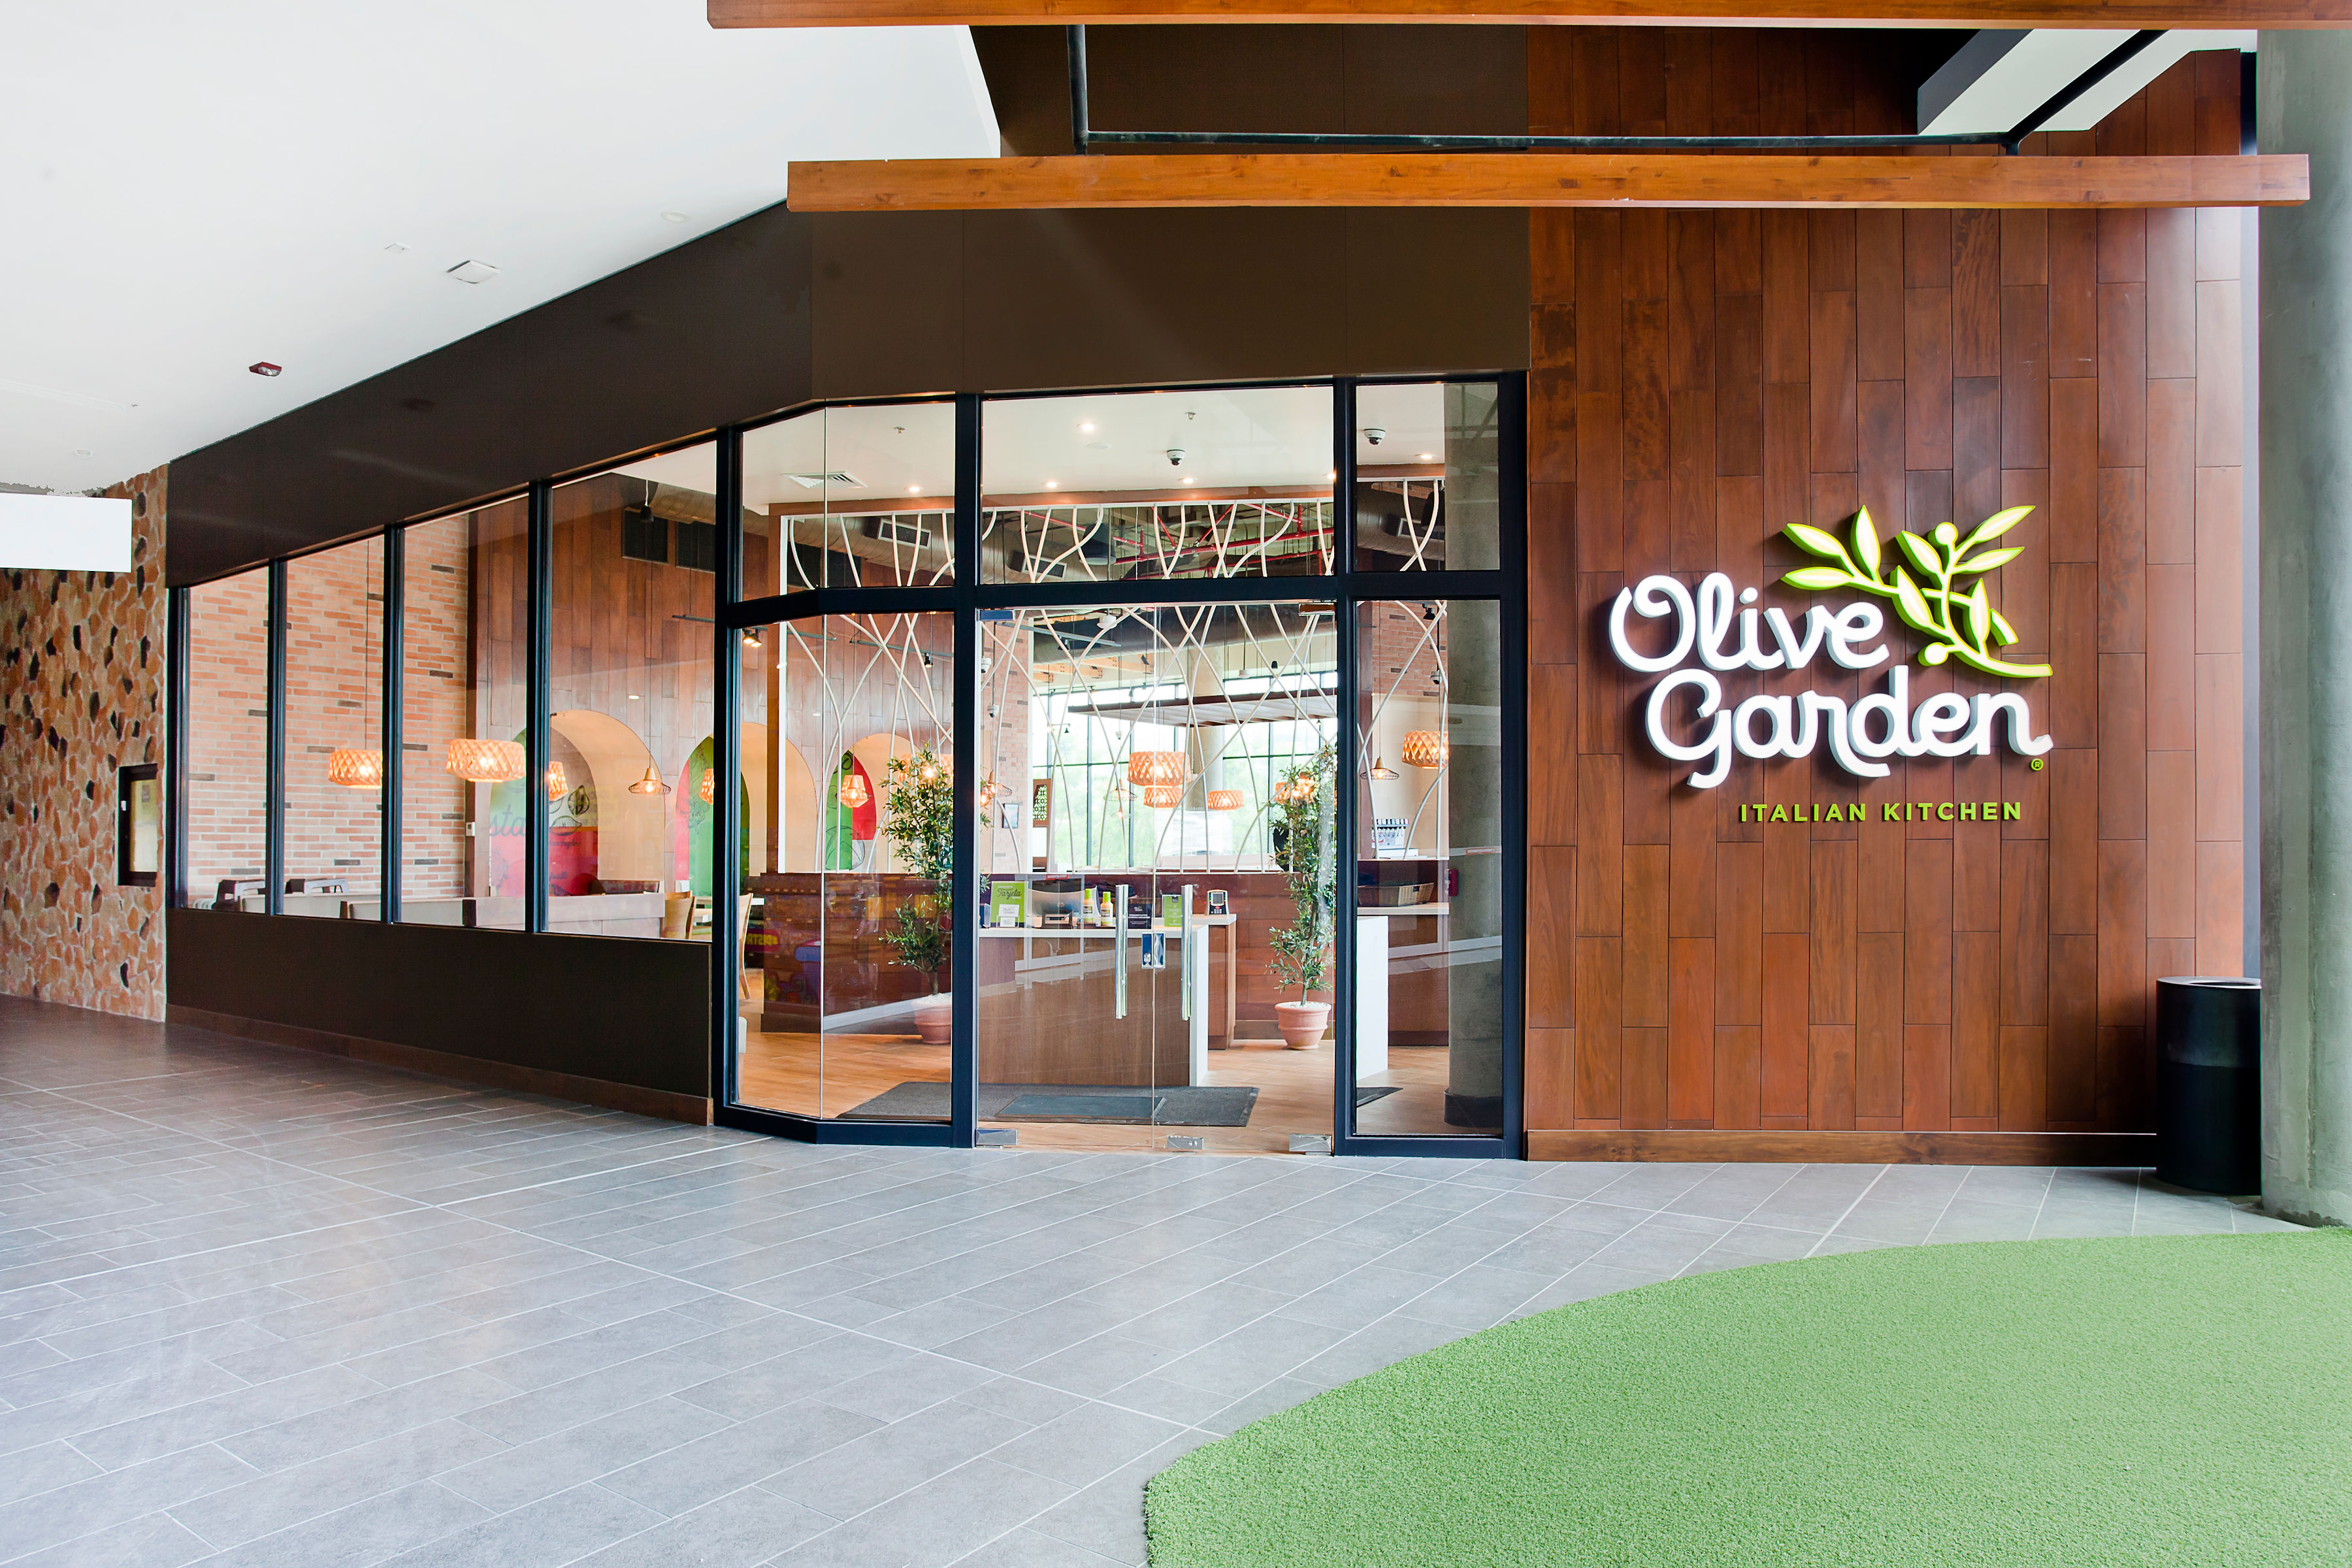 Olive Garden Abre Dos Locales En Costa Rica Y Contrata A 130 Personas La Nacion